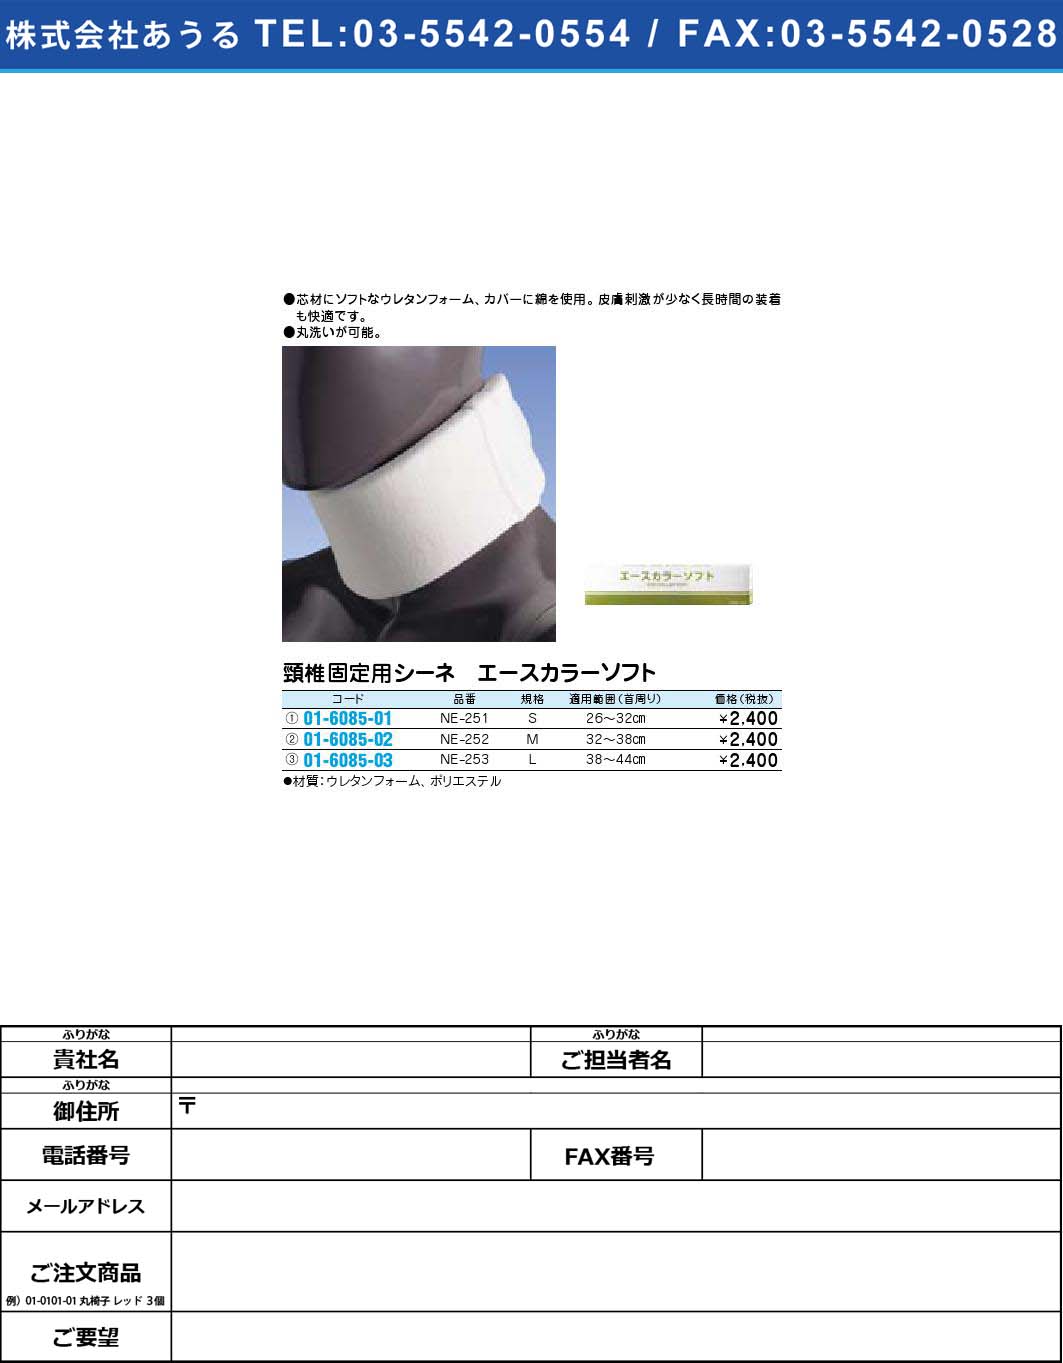 頸椎固定用シーネ エースカラーソフト NE-252【1単位】(01-6085-02)